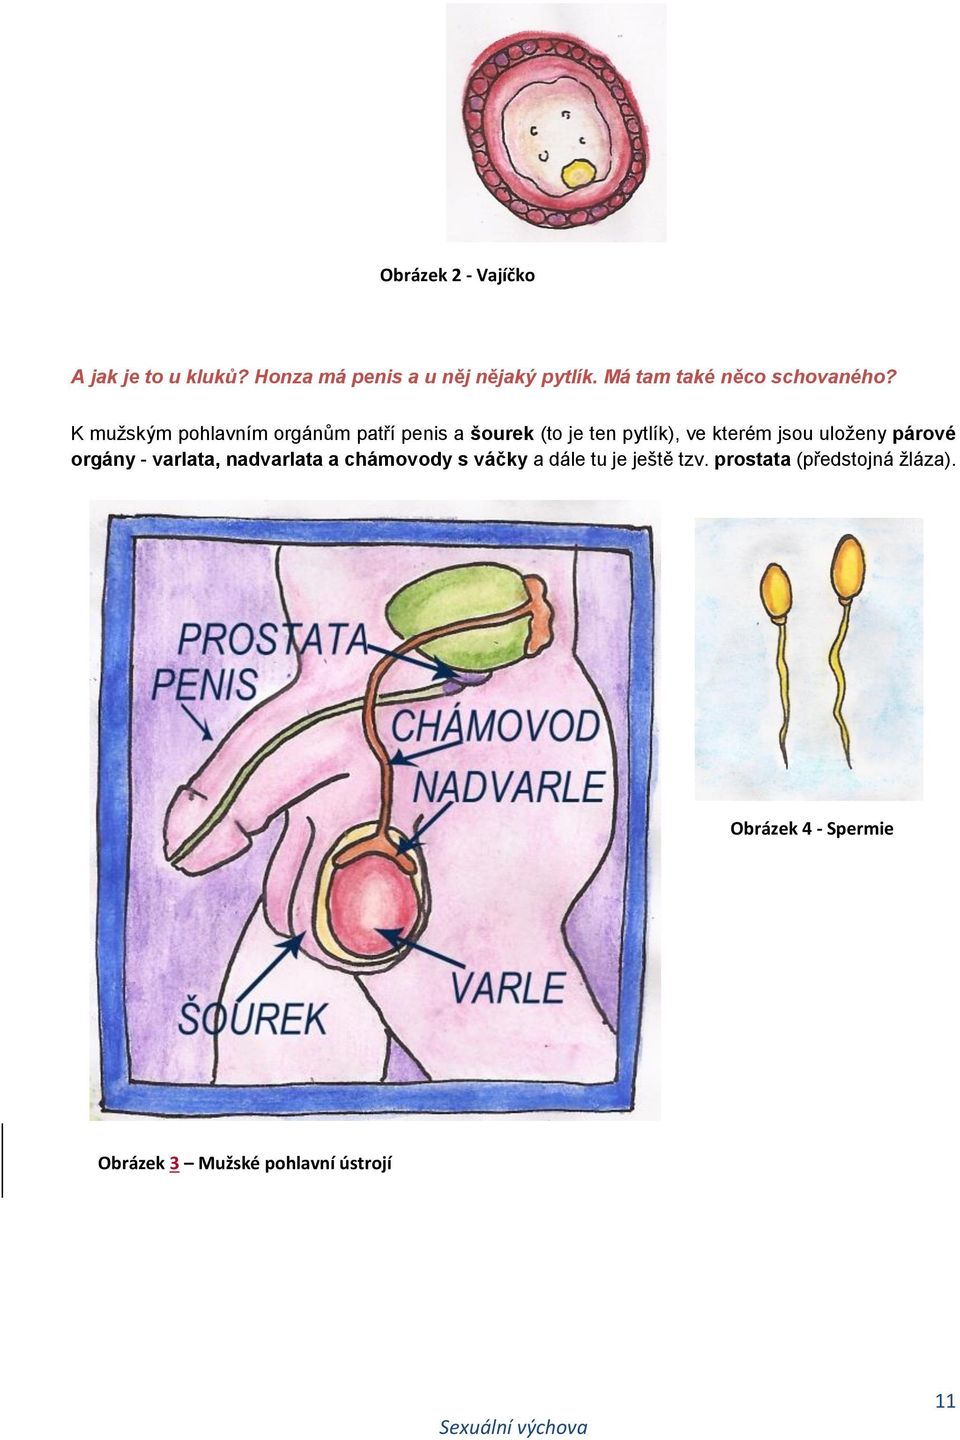 K mužským pohlavním orgánům patří penis a šourek (to je ten pytlík), ve kterém jsou uloženy